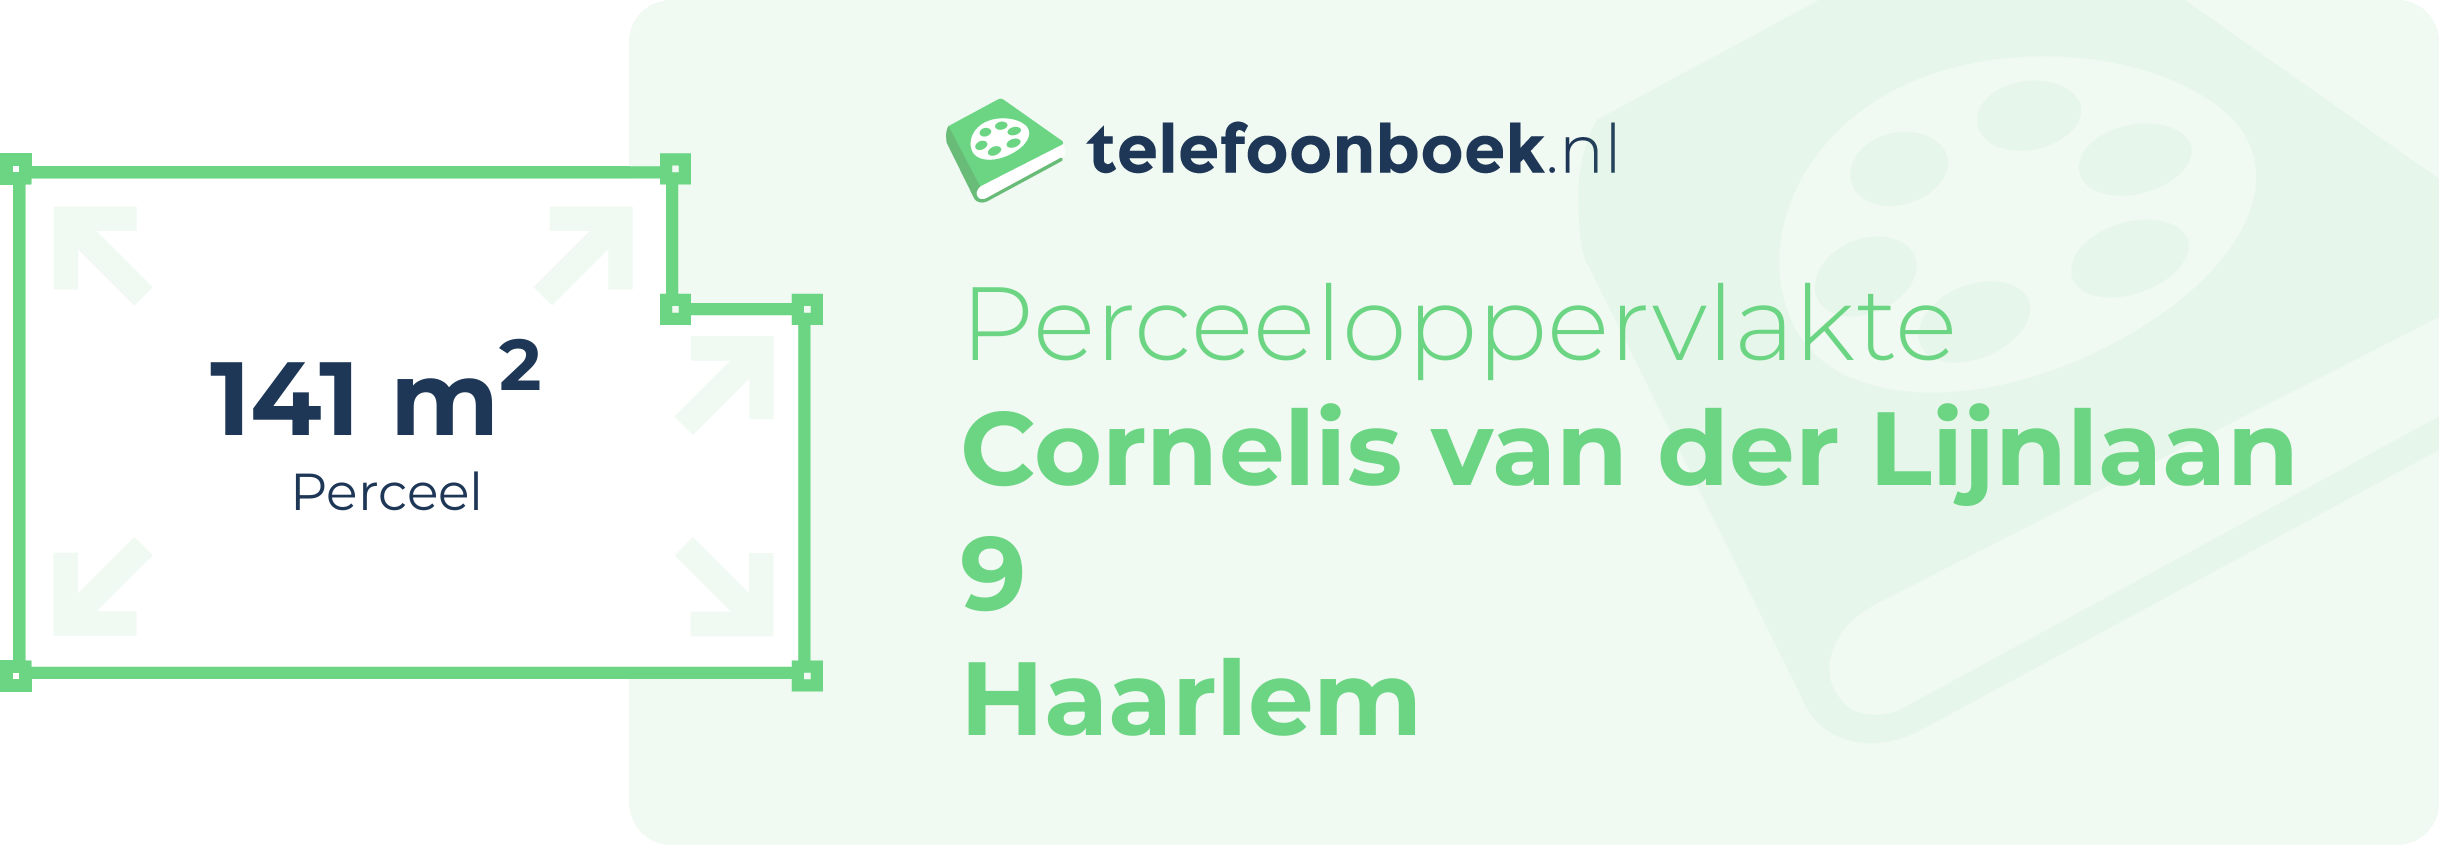 Perceeloppervlakte Cornelis Van Der Lijnlaan 9 Haarlem